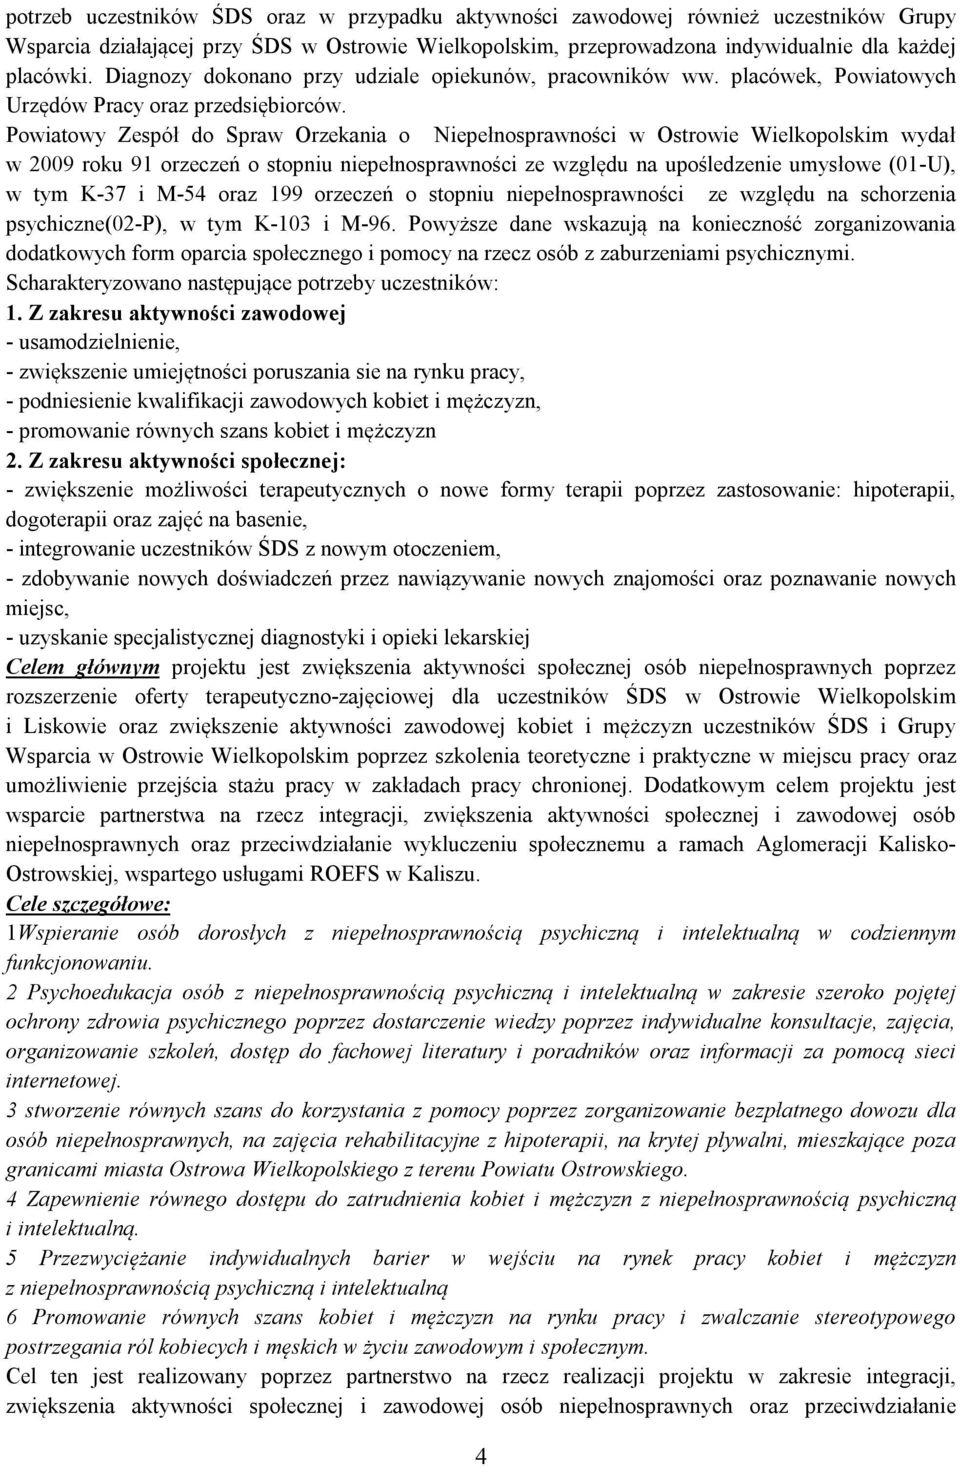 Powiatowy Zespół do Spraw Orzekania o Niepełnosprawności w Ostrowie Wielkopolskim wydał w 2009 roku 91 orzeczeń o stopniu ze względu na upośledzenie umysłowe (01-U), w tym K-37 i M-54 oraz 199